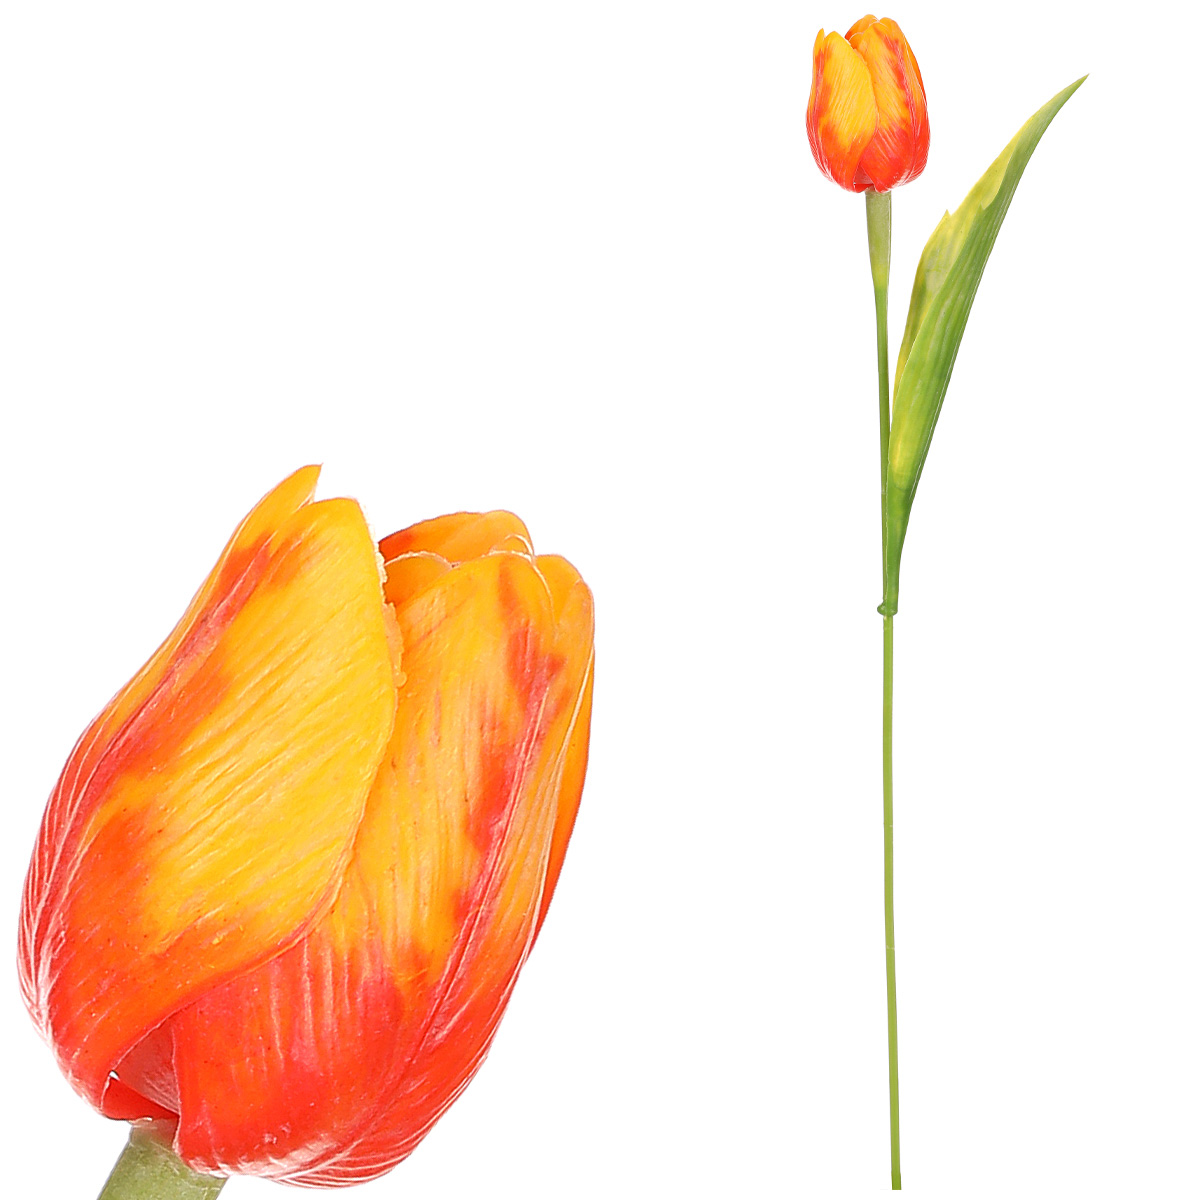 Tulipán plastový v oranžové barvě. Cena za 1ks. Ve svazku 6ks.